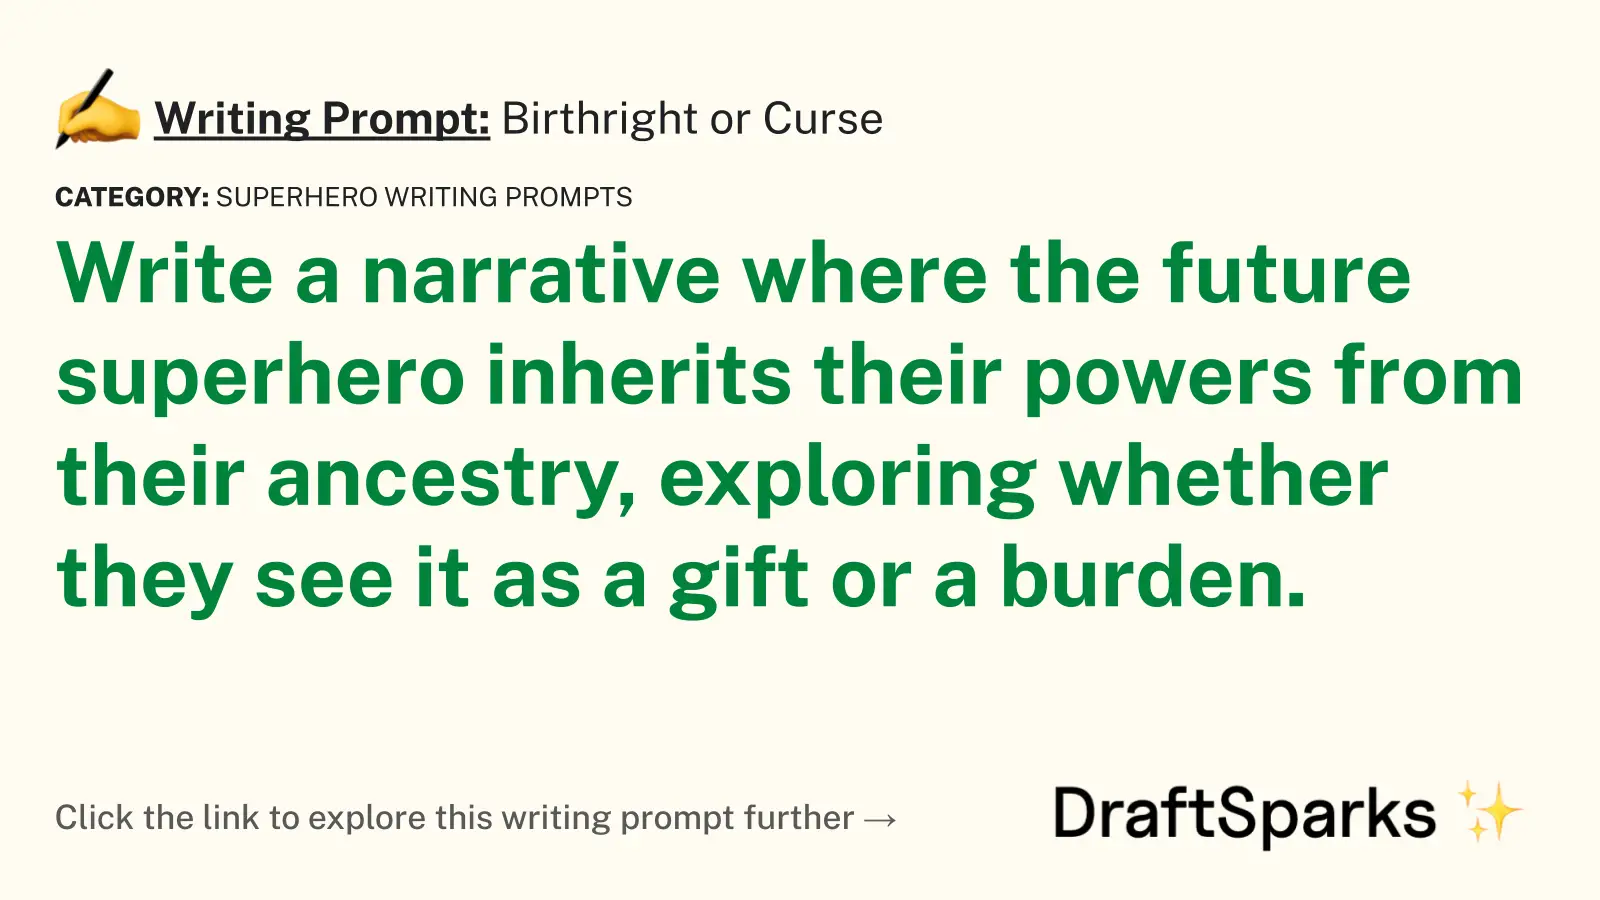 Birthright or Curse